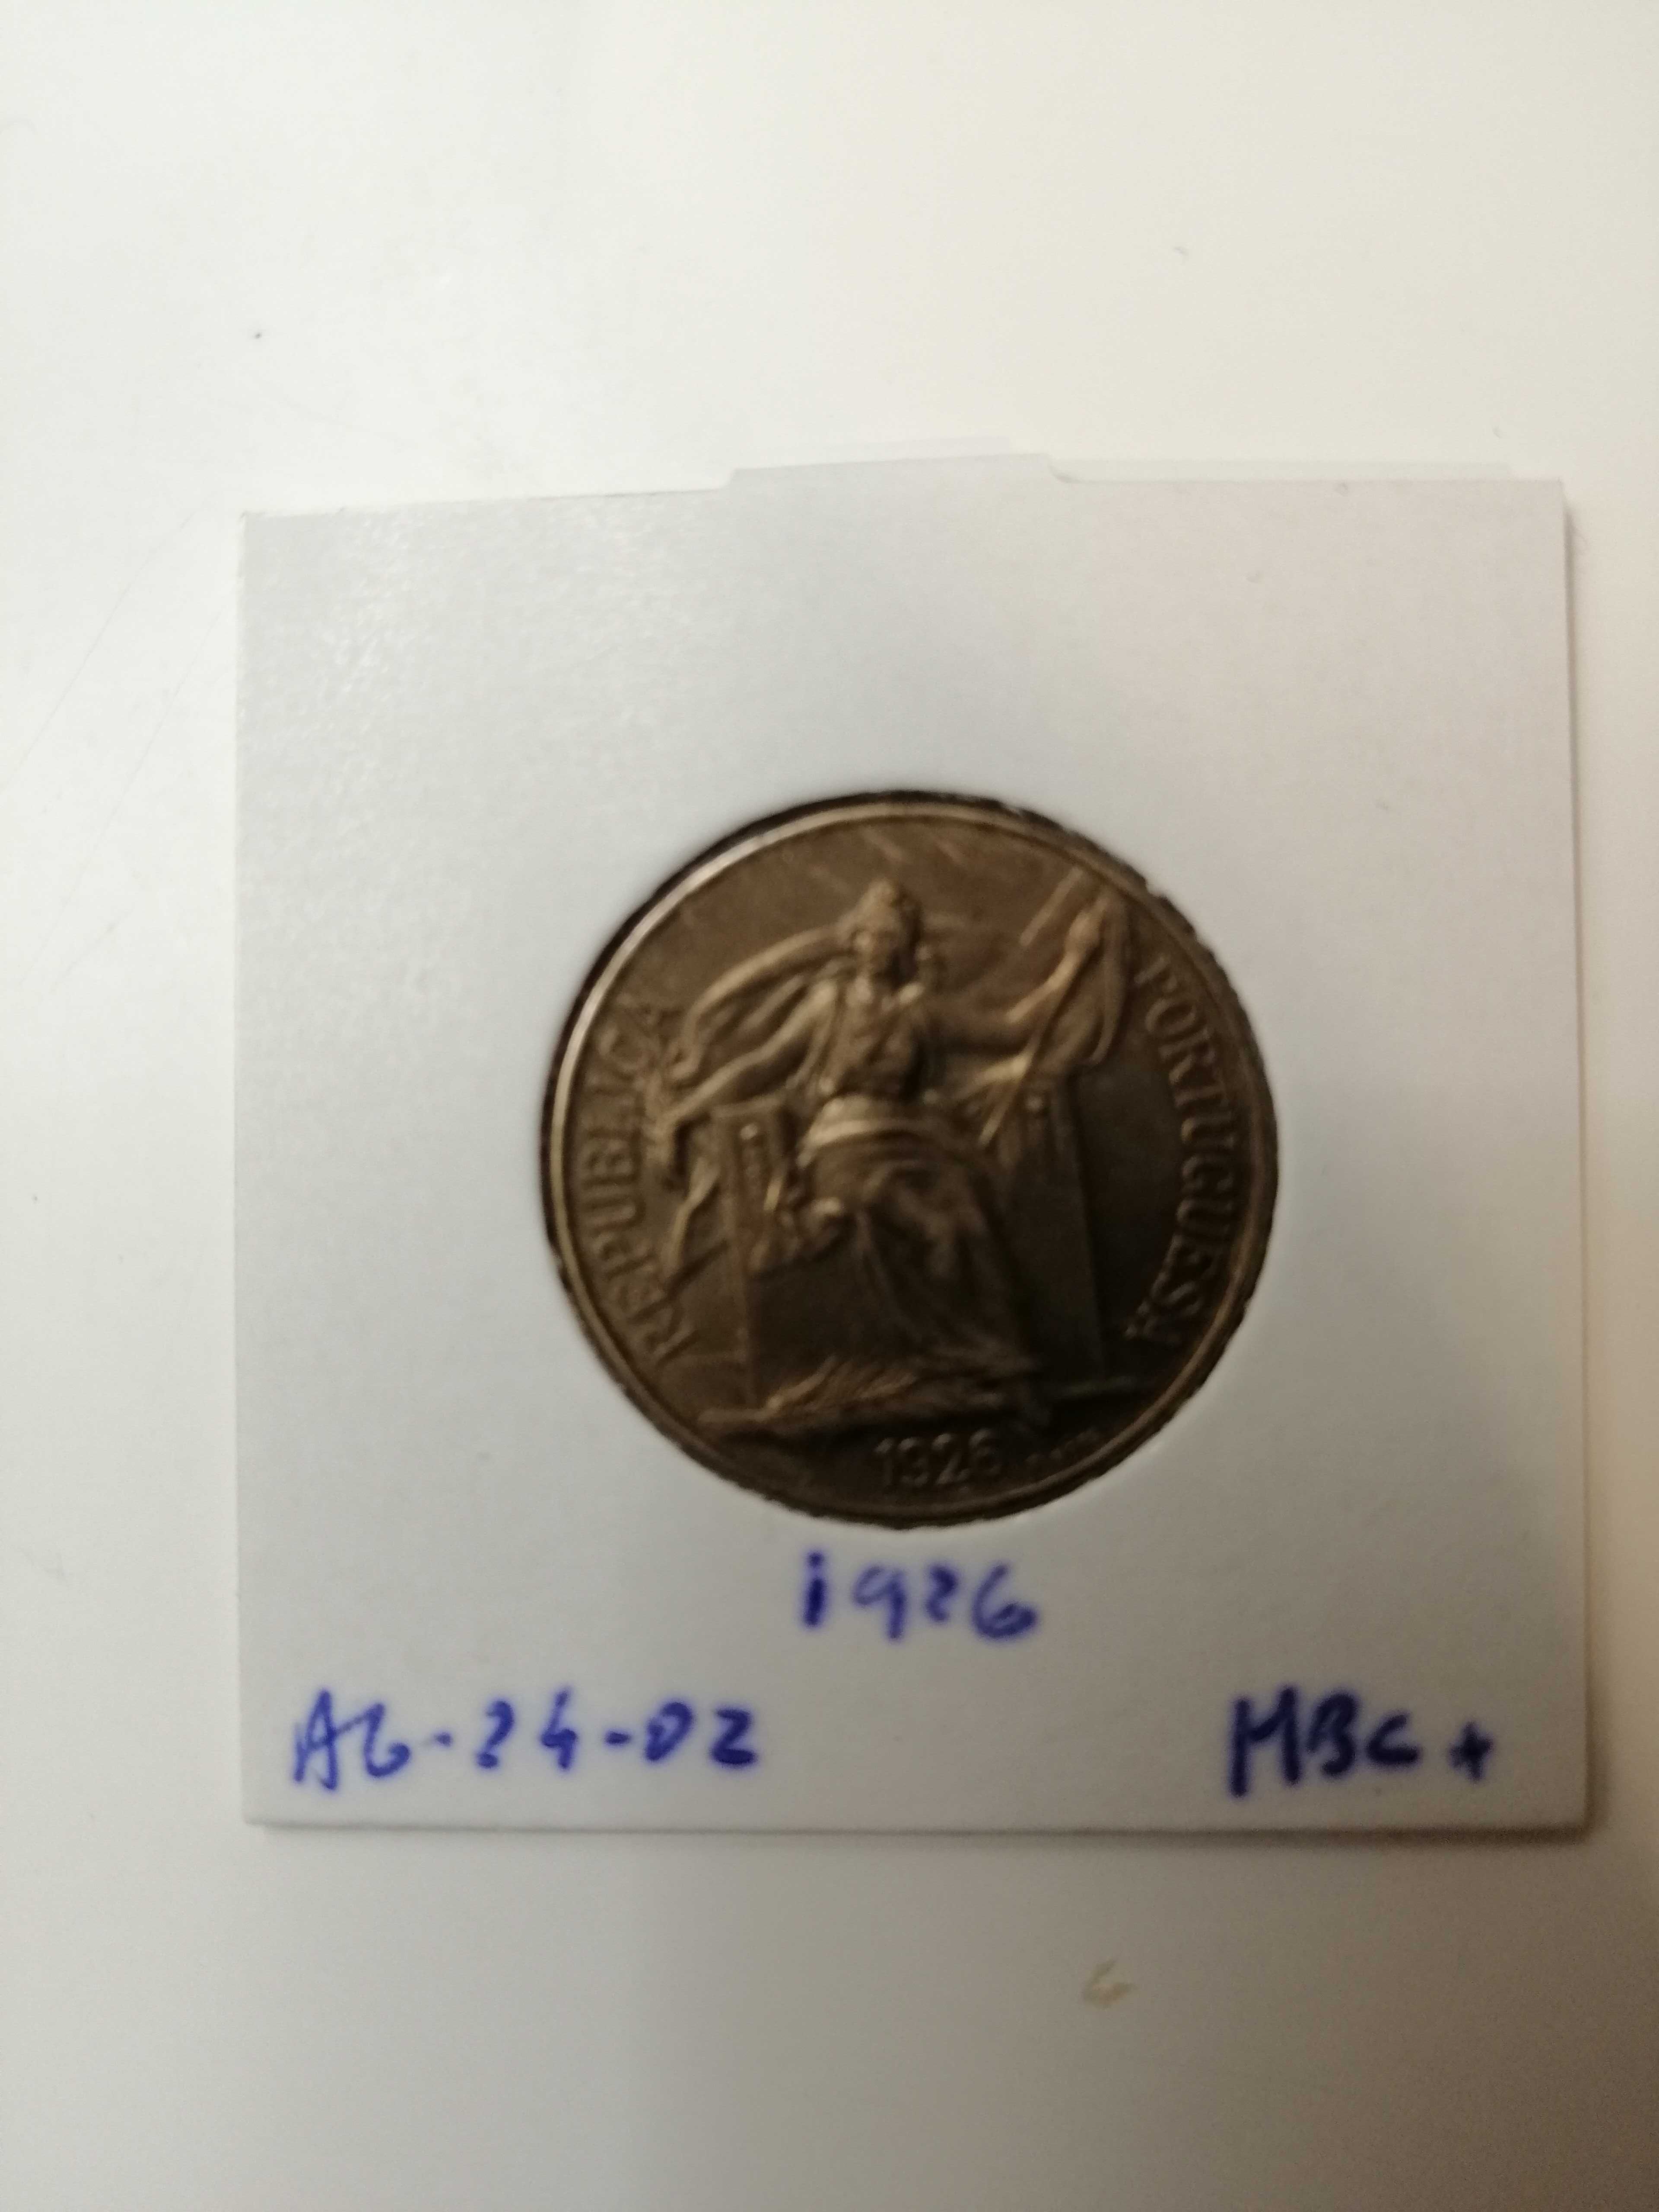 Coleção moedas de 1 escudo